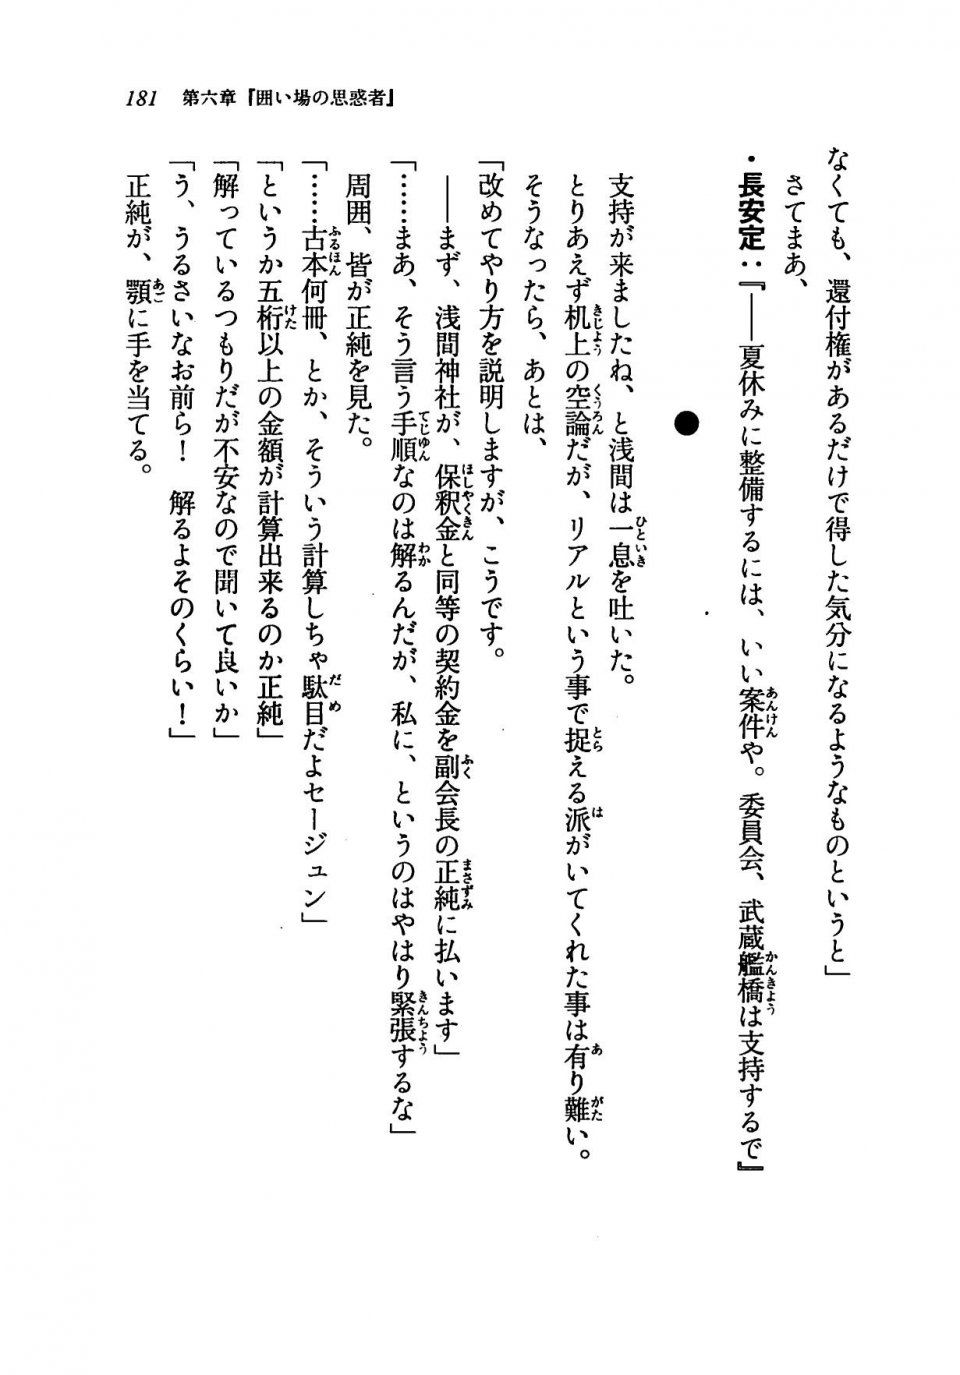 Kyoukai Senjou no Horizon LN Vol 19(8A) - Photo #181